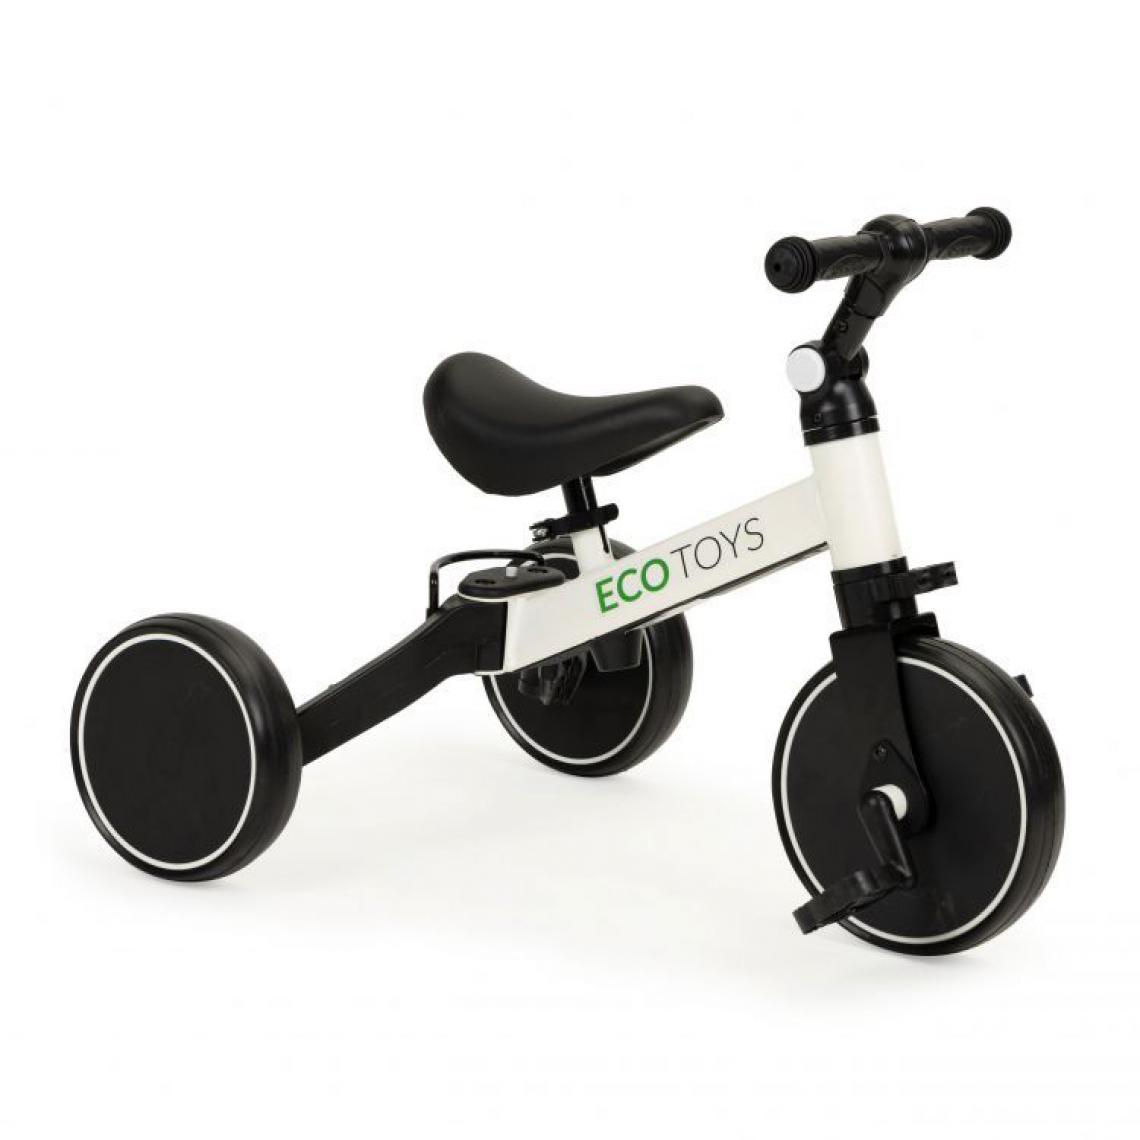 Hucoco - MSTORE - Vélo draisienne 4en1 - 18m+ - Système de pliage innovant - Vélo pour enfants - Blanc - Voitures